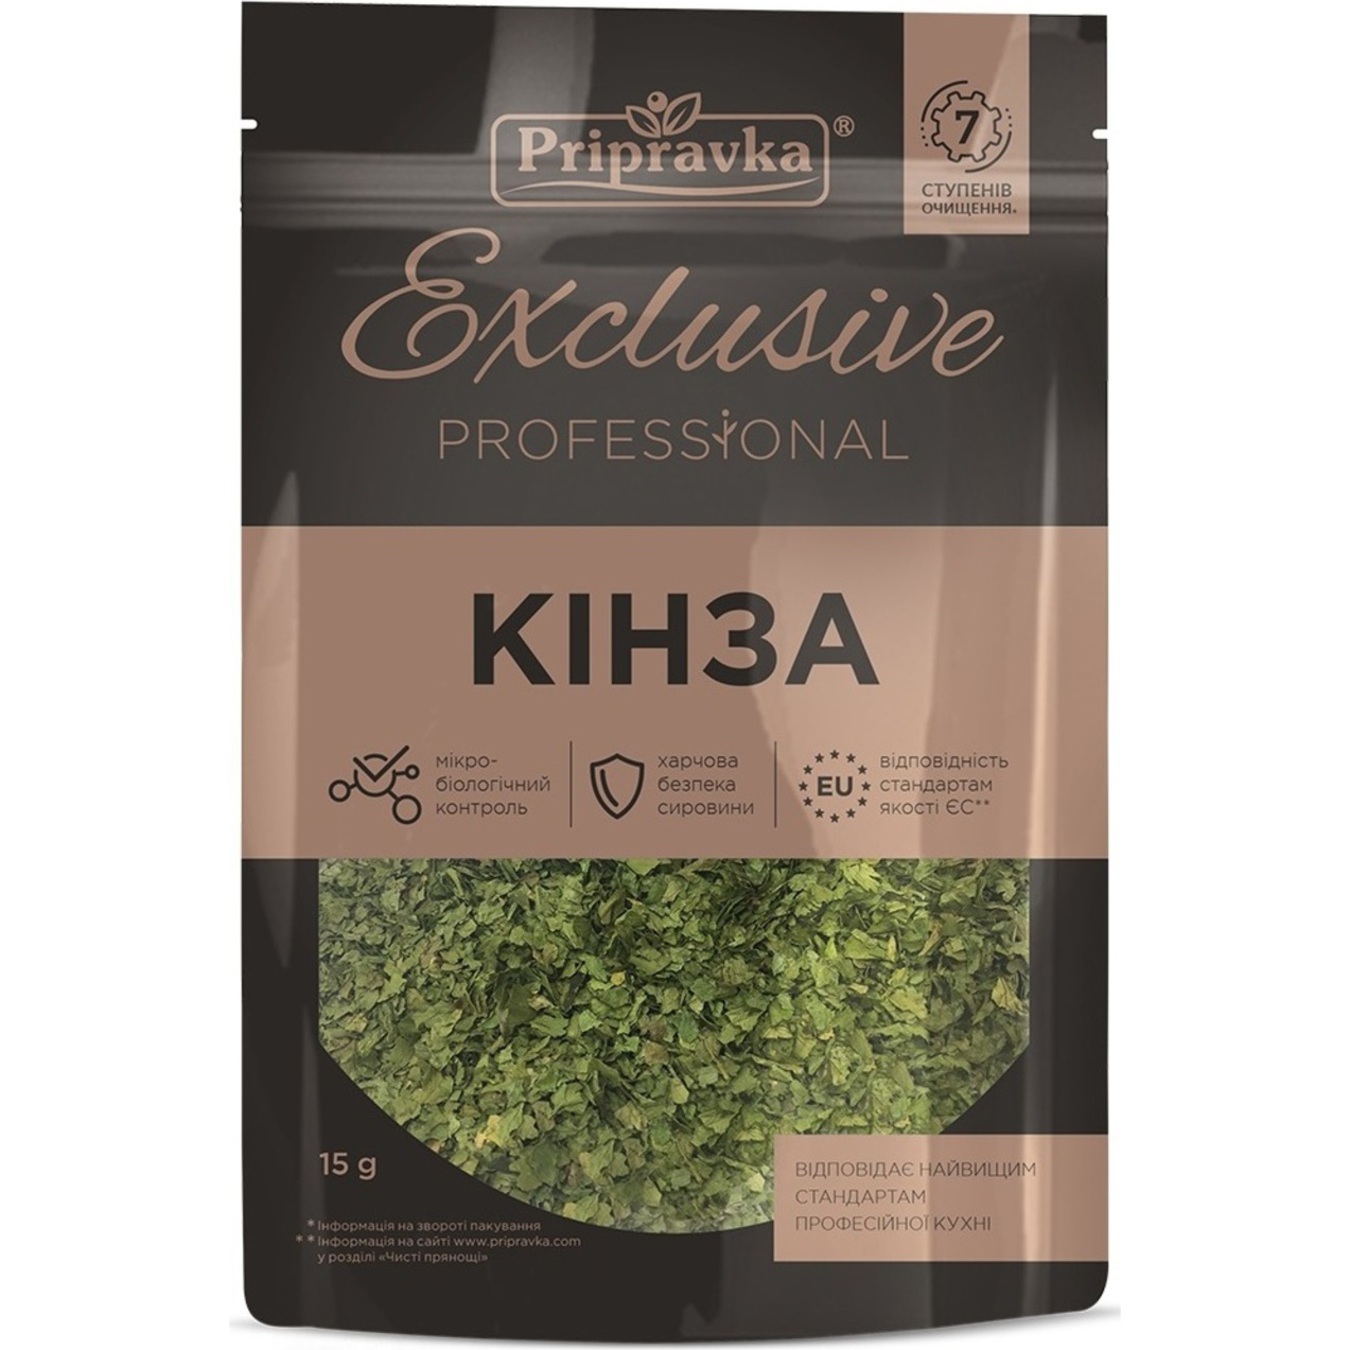 Pripravka Exclusive Professional dried cilantro Spice 15g